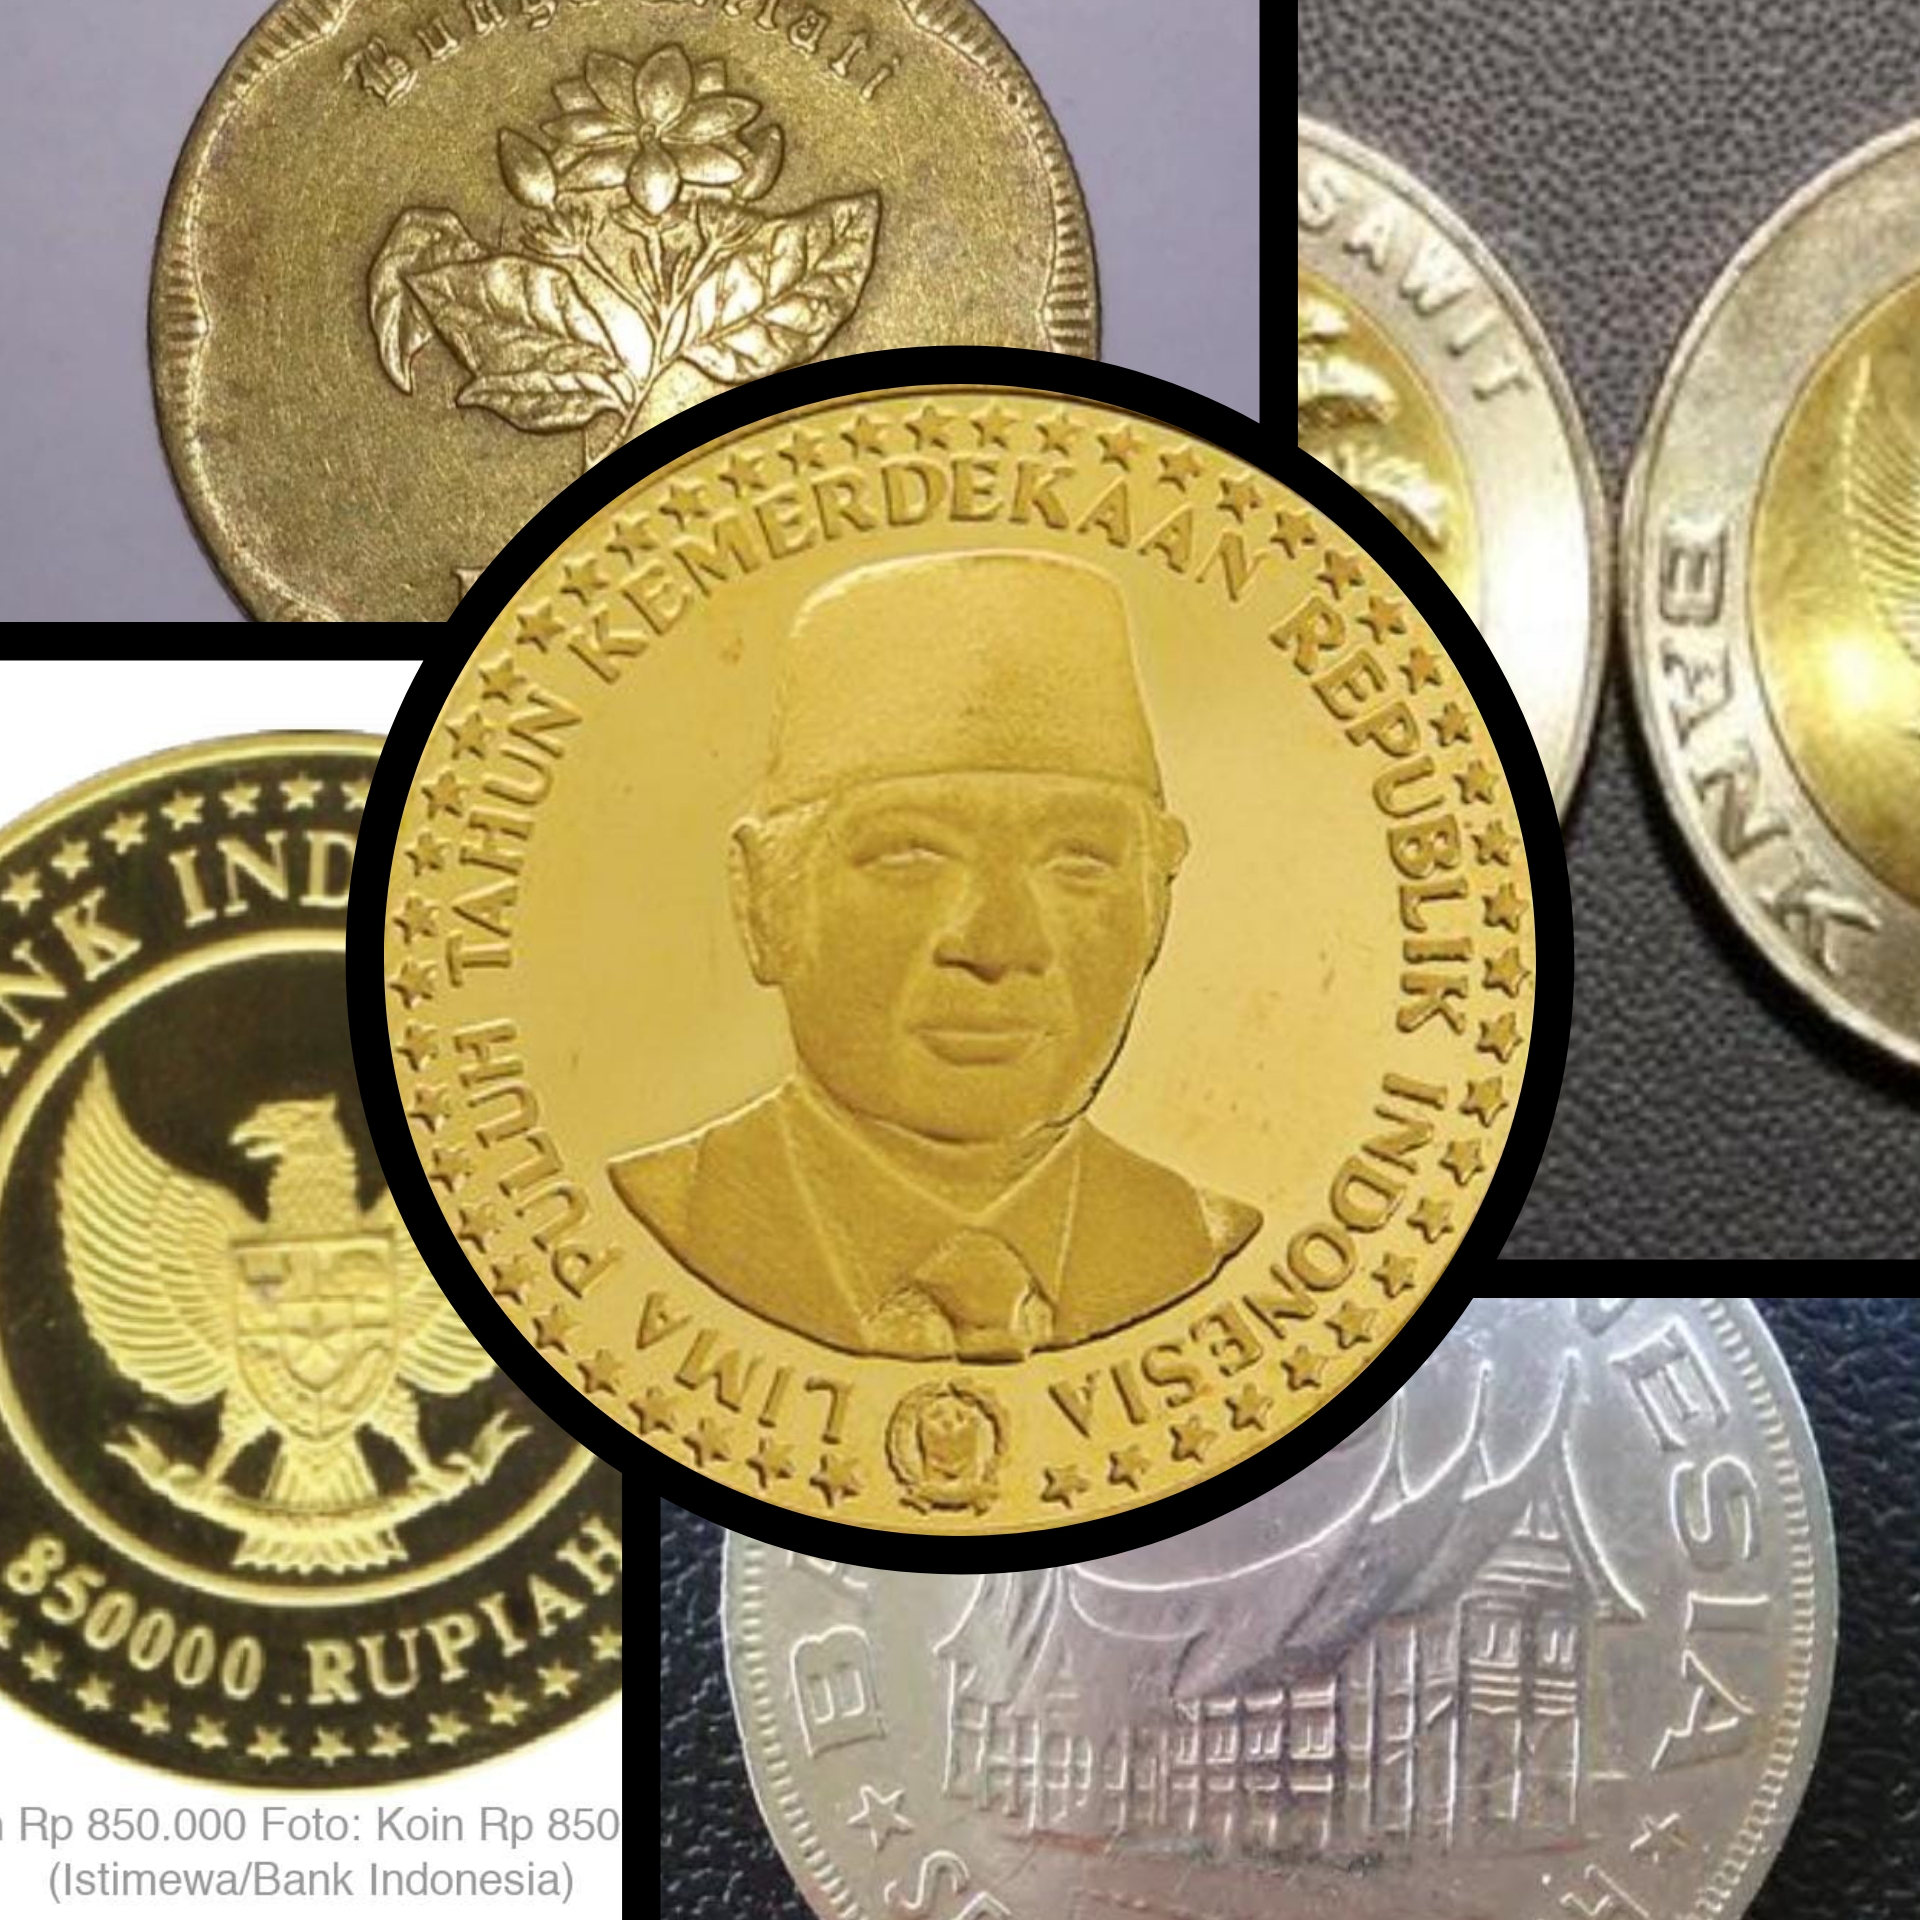 8 Uang Koin Kuno Ini Dicari Kolektor, Harganya Mencapai Ratusan Juta?